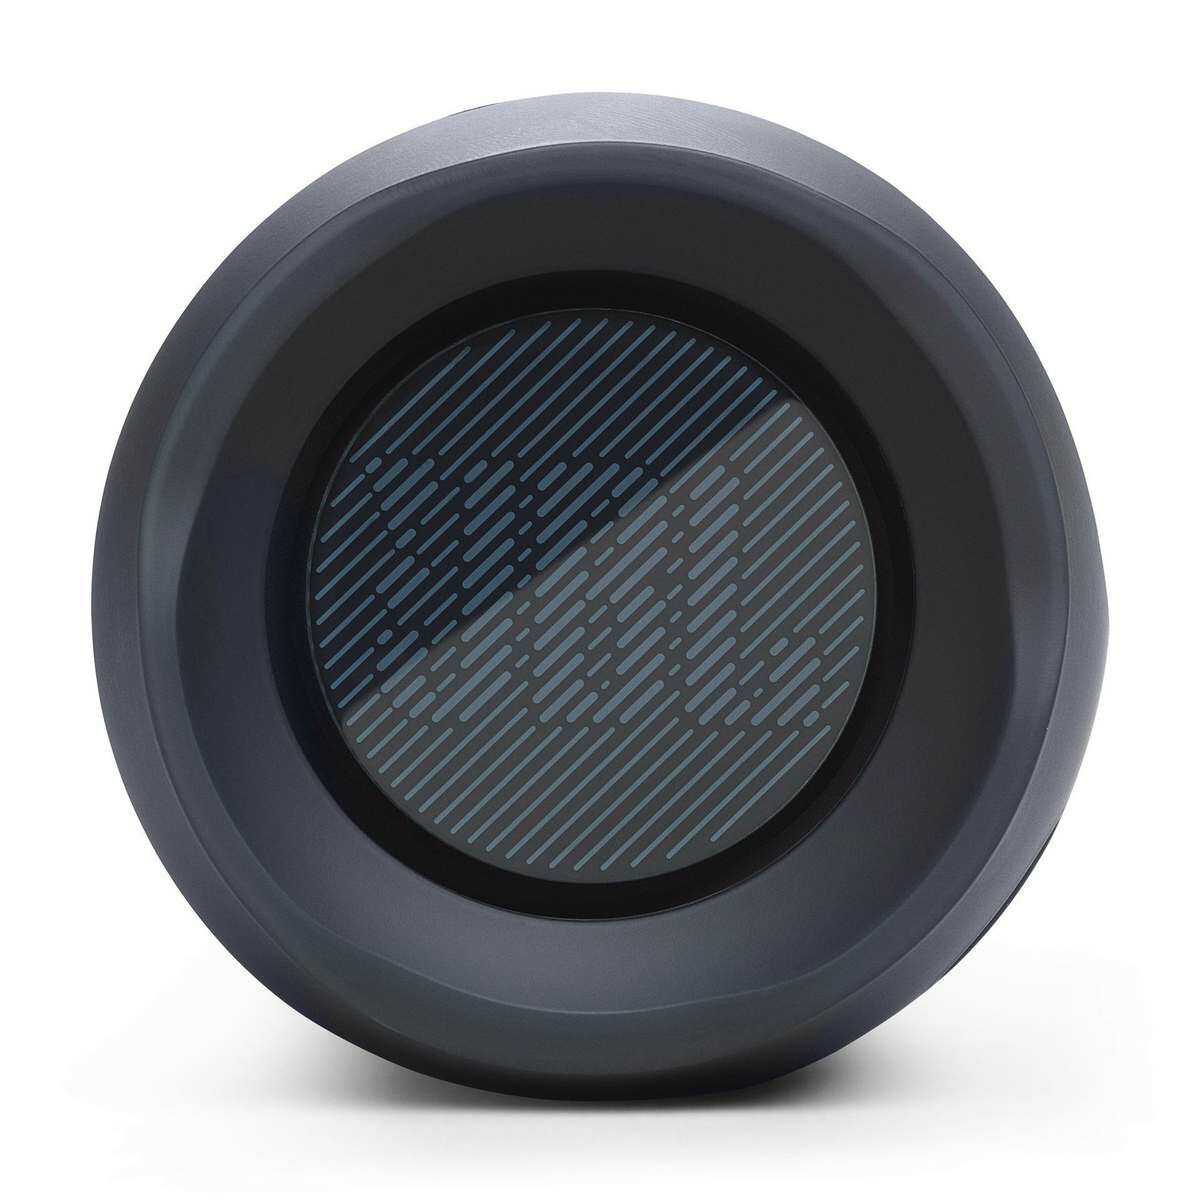 Kép 5/9 - JBL Flip Essential 2 Portable Bluetooth Speaker, hordozható hangszóró, sötét szürke EU